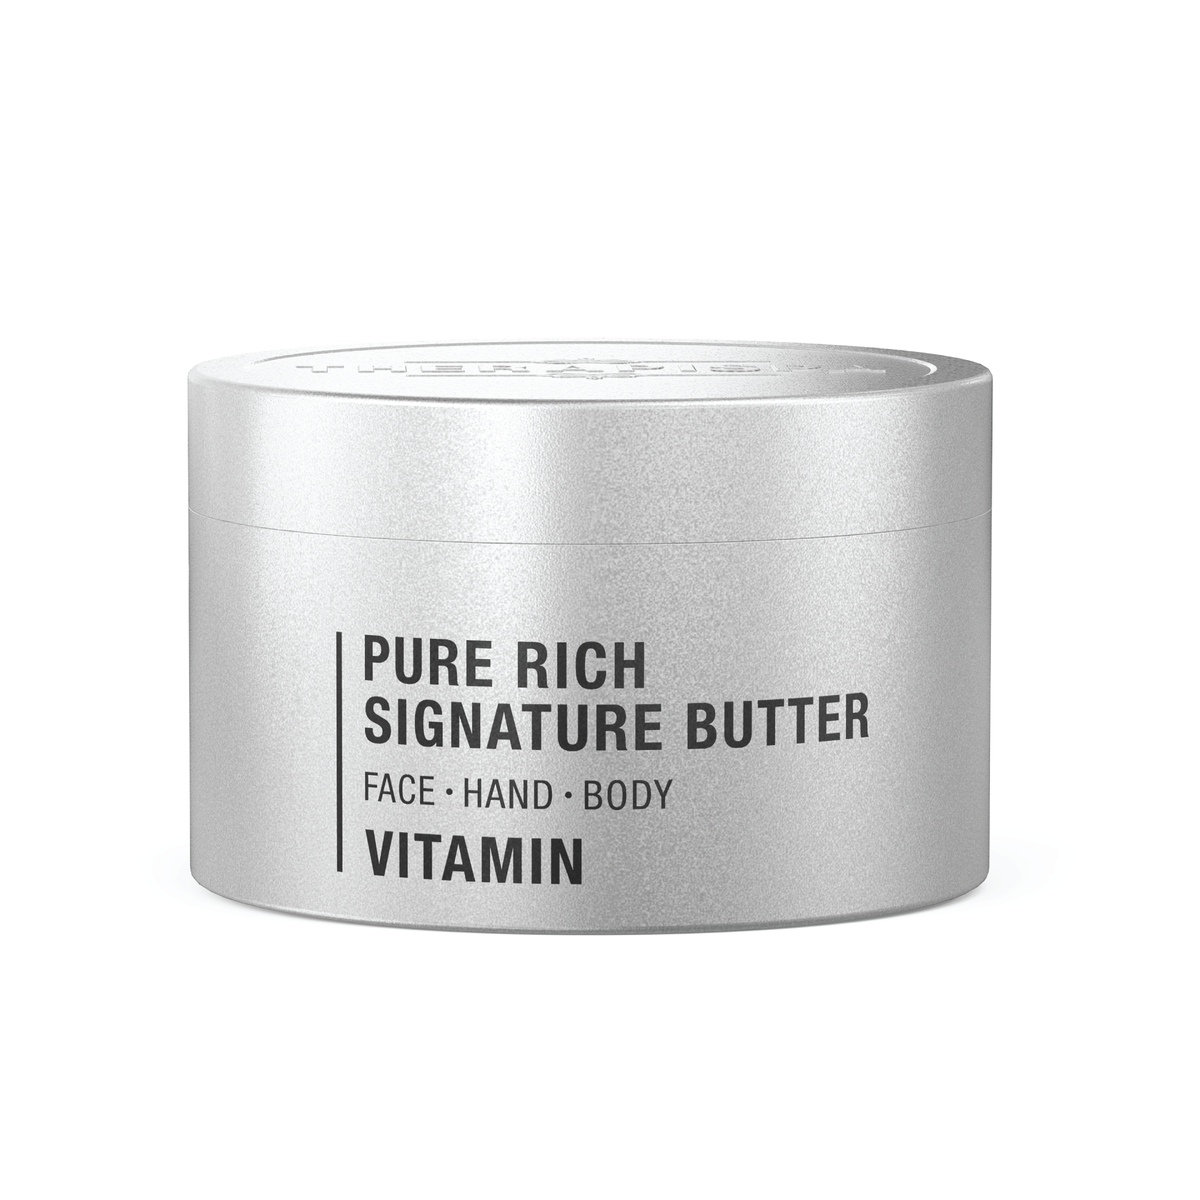 Pure Rich Signature Butter / Vitamin